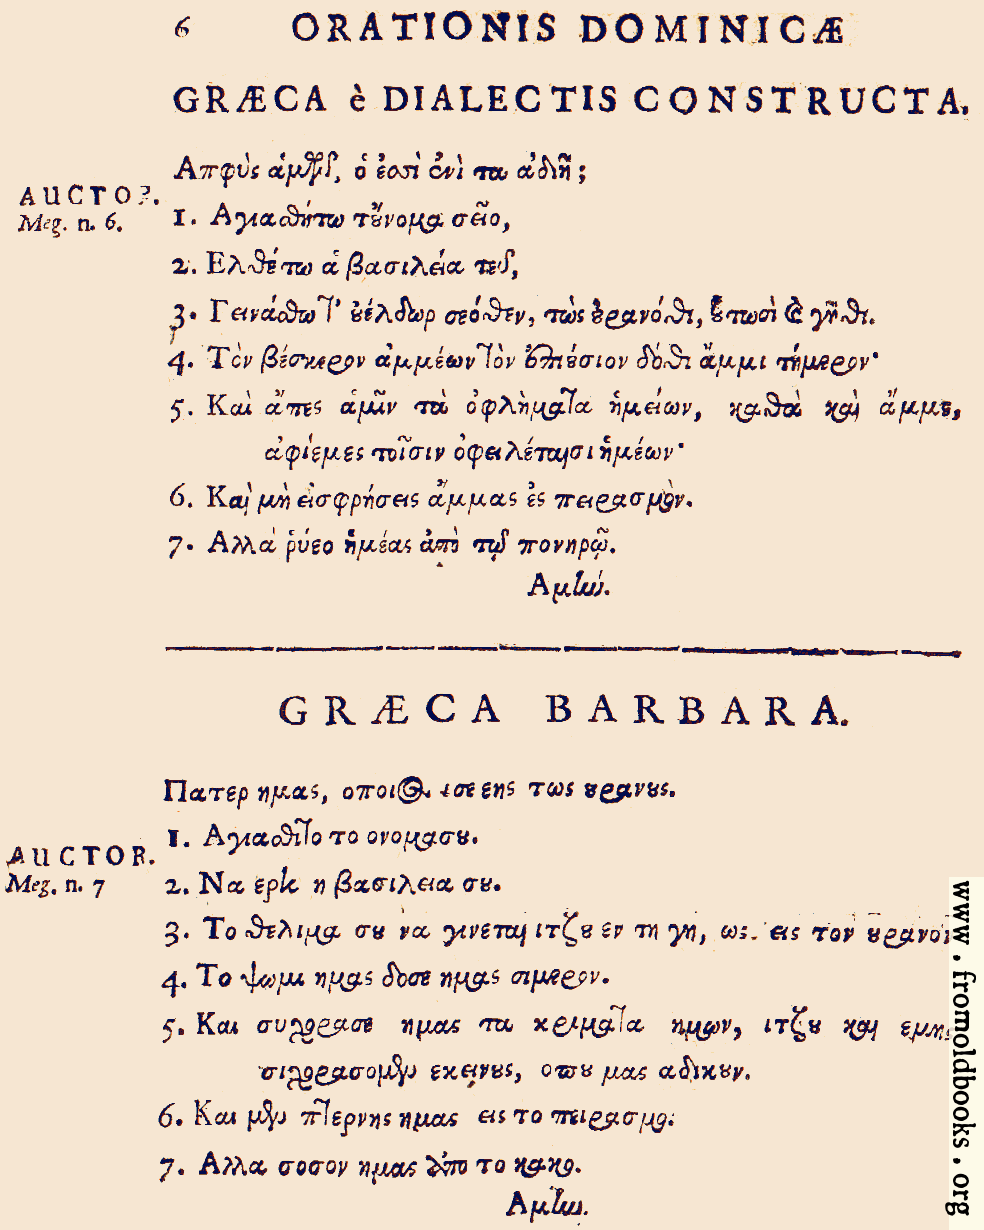 [Picture: 06: Græca è Dialectis constructa; Græca Barbara]